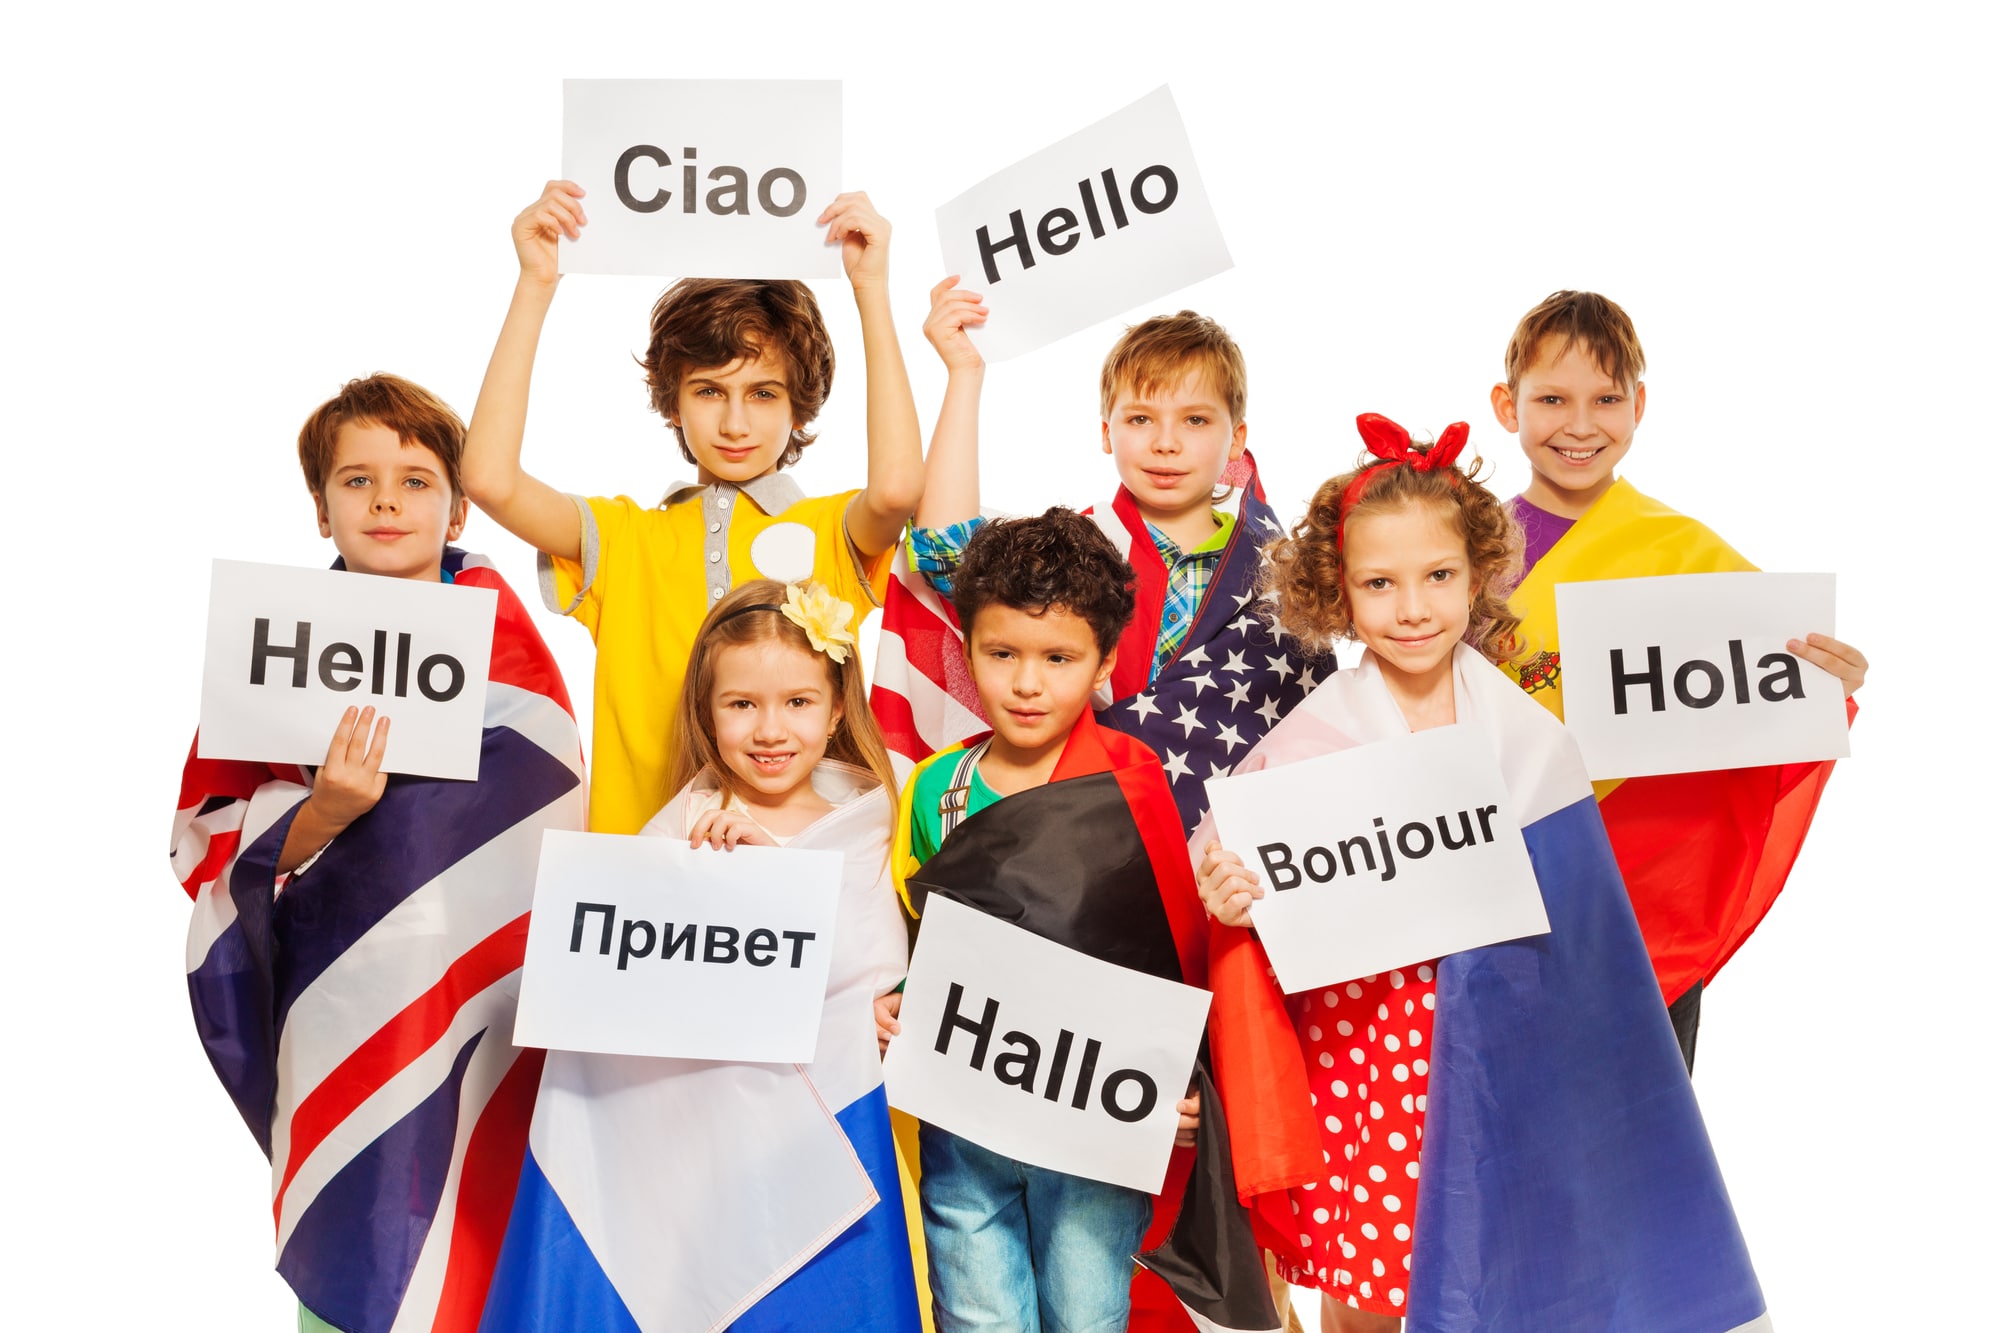 Lingue straniere più studiate al mondo? Inglese domina ma l’italiano si difende bene thumbnail